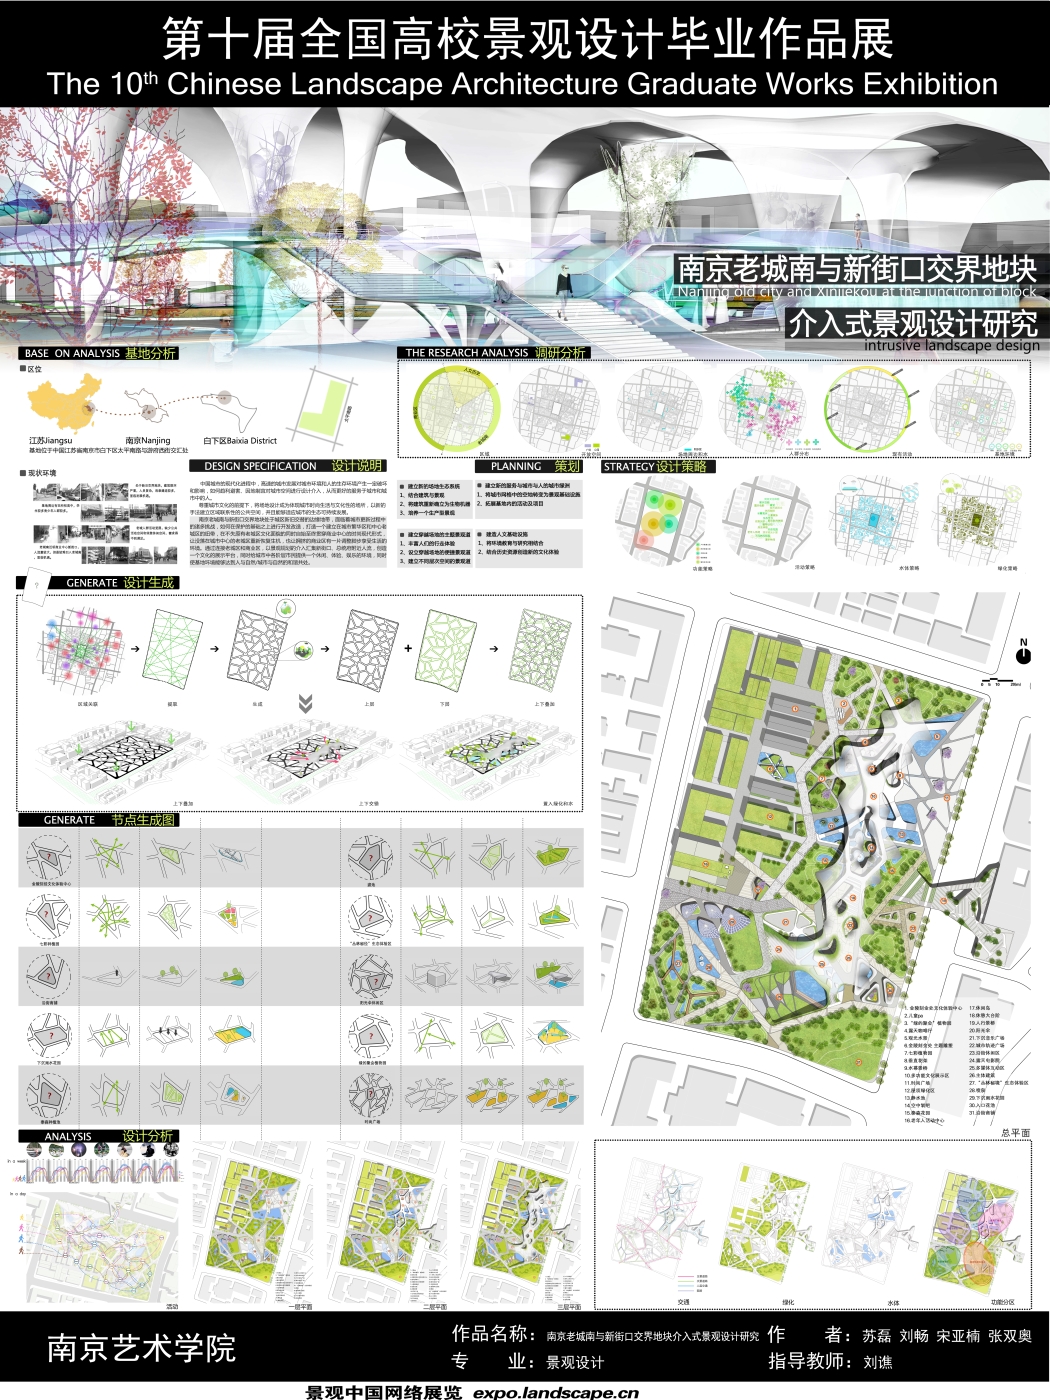 南京老城南与新街口交界地块介入式景观设计研究-1